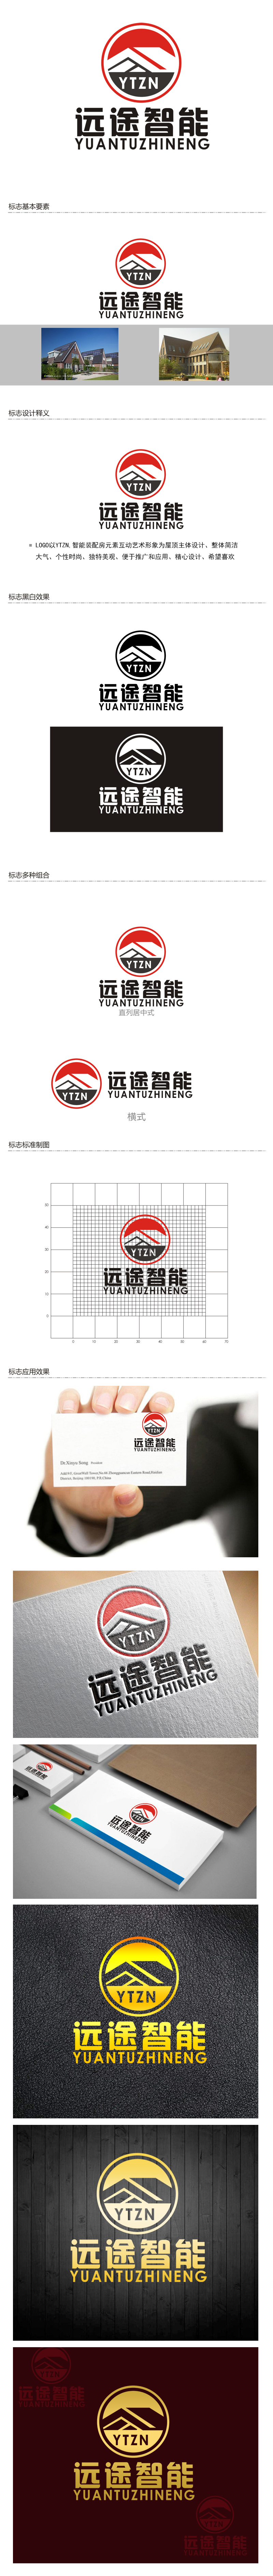 李正东的江苏远途智能装配房有限公司logo设计